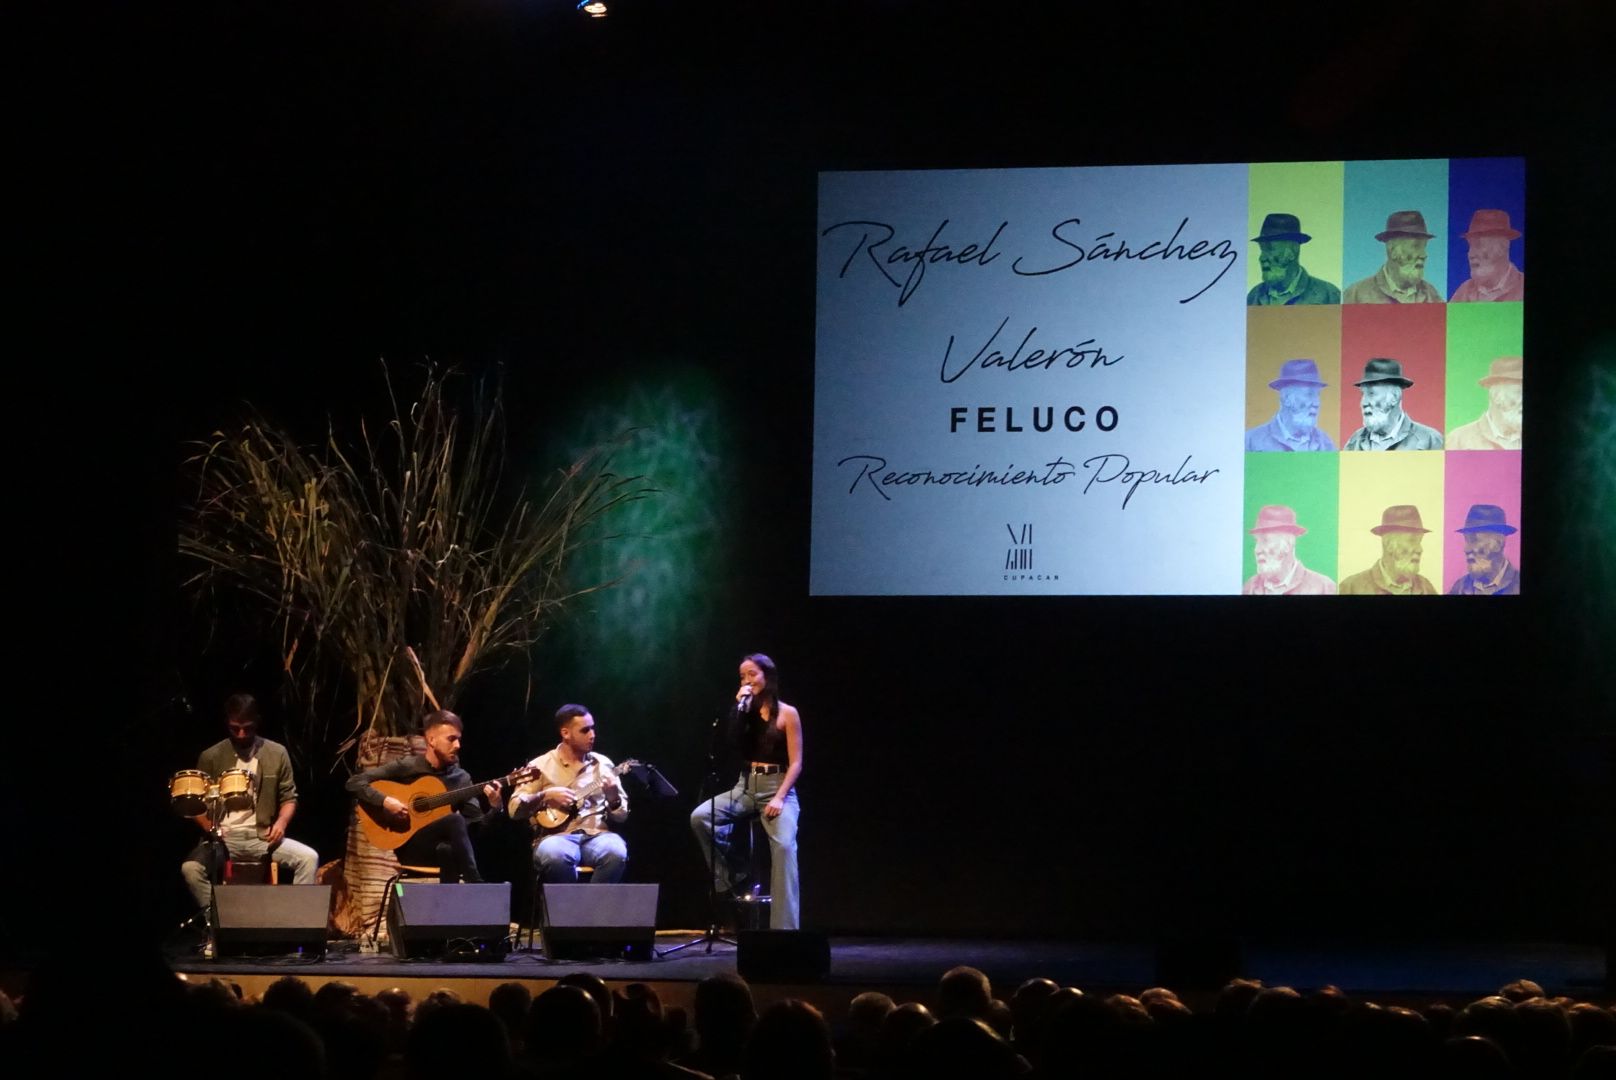 Rafael Sánchez Valerón, ‘Feluco’ recibe el homenaje de Ingenio